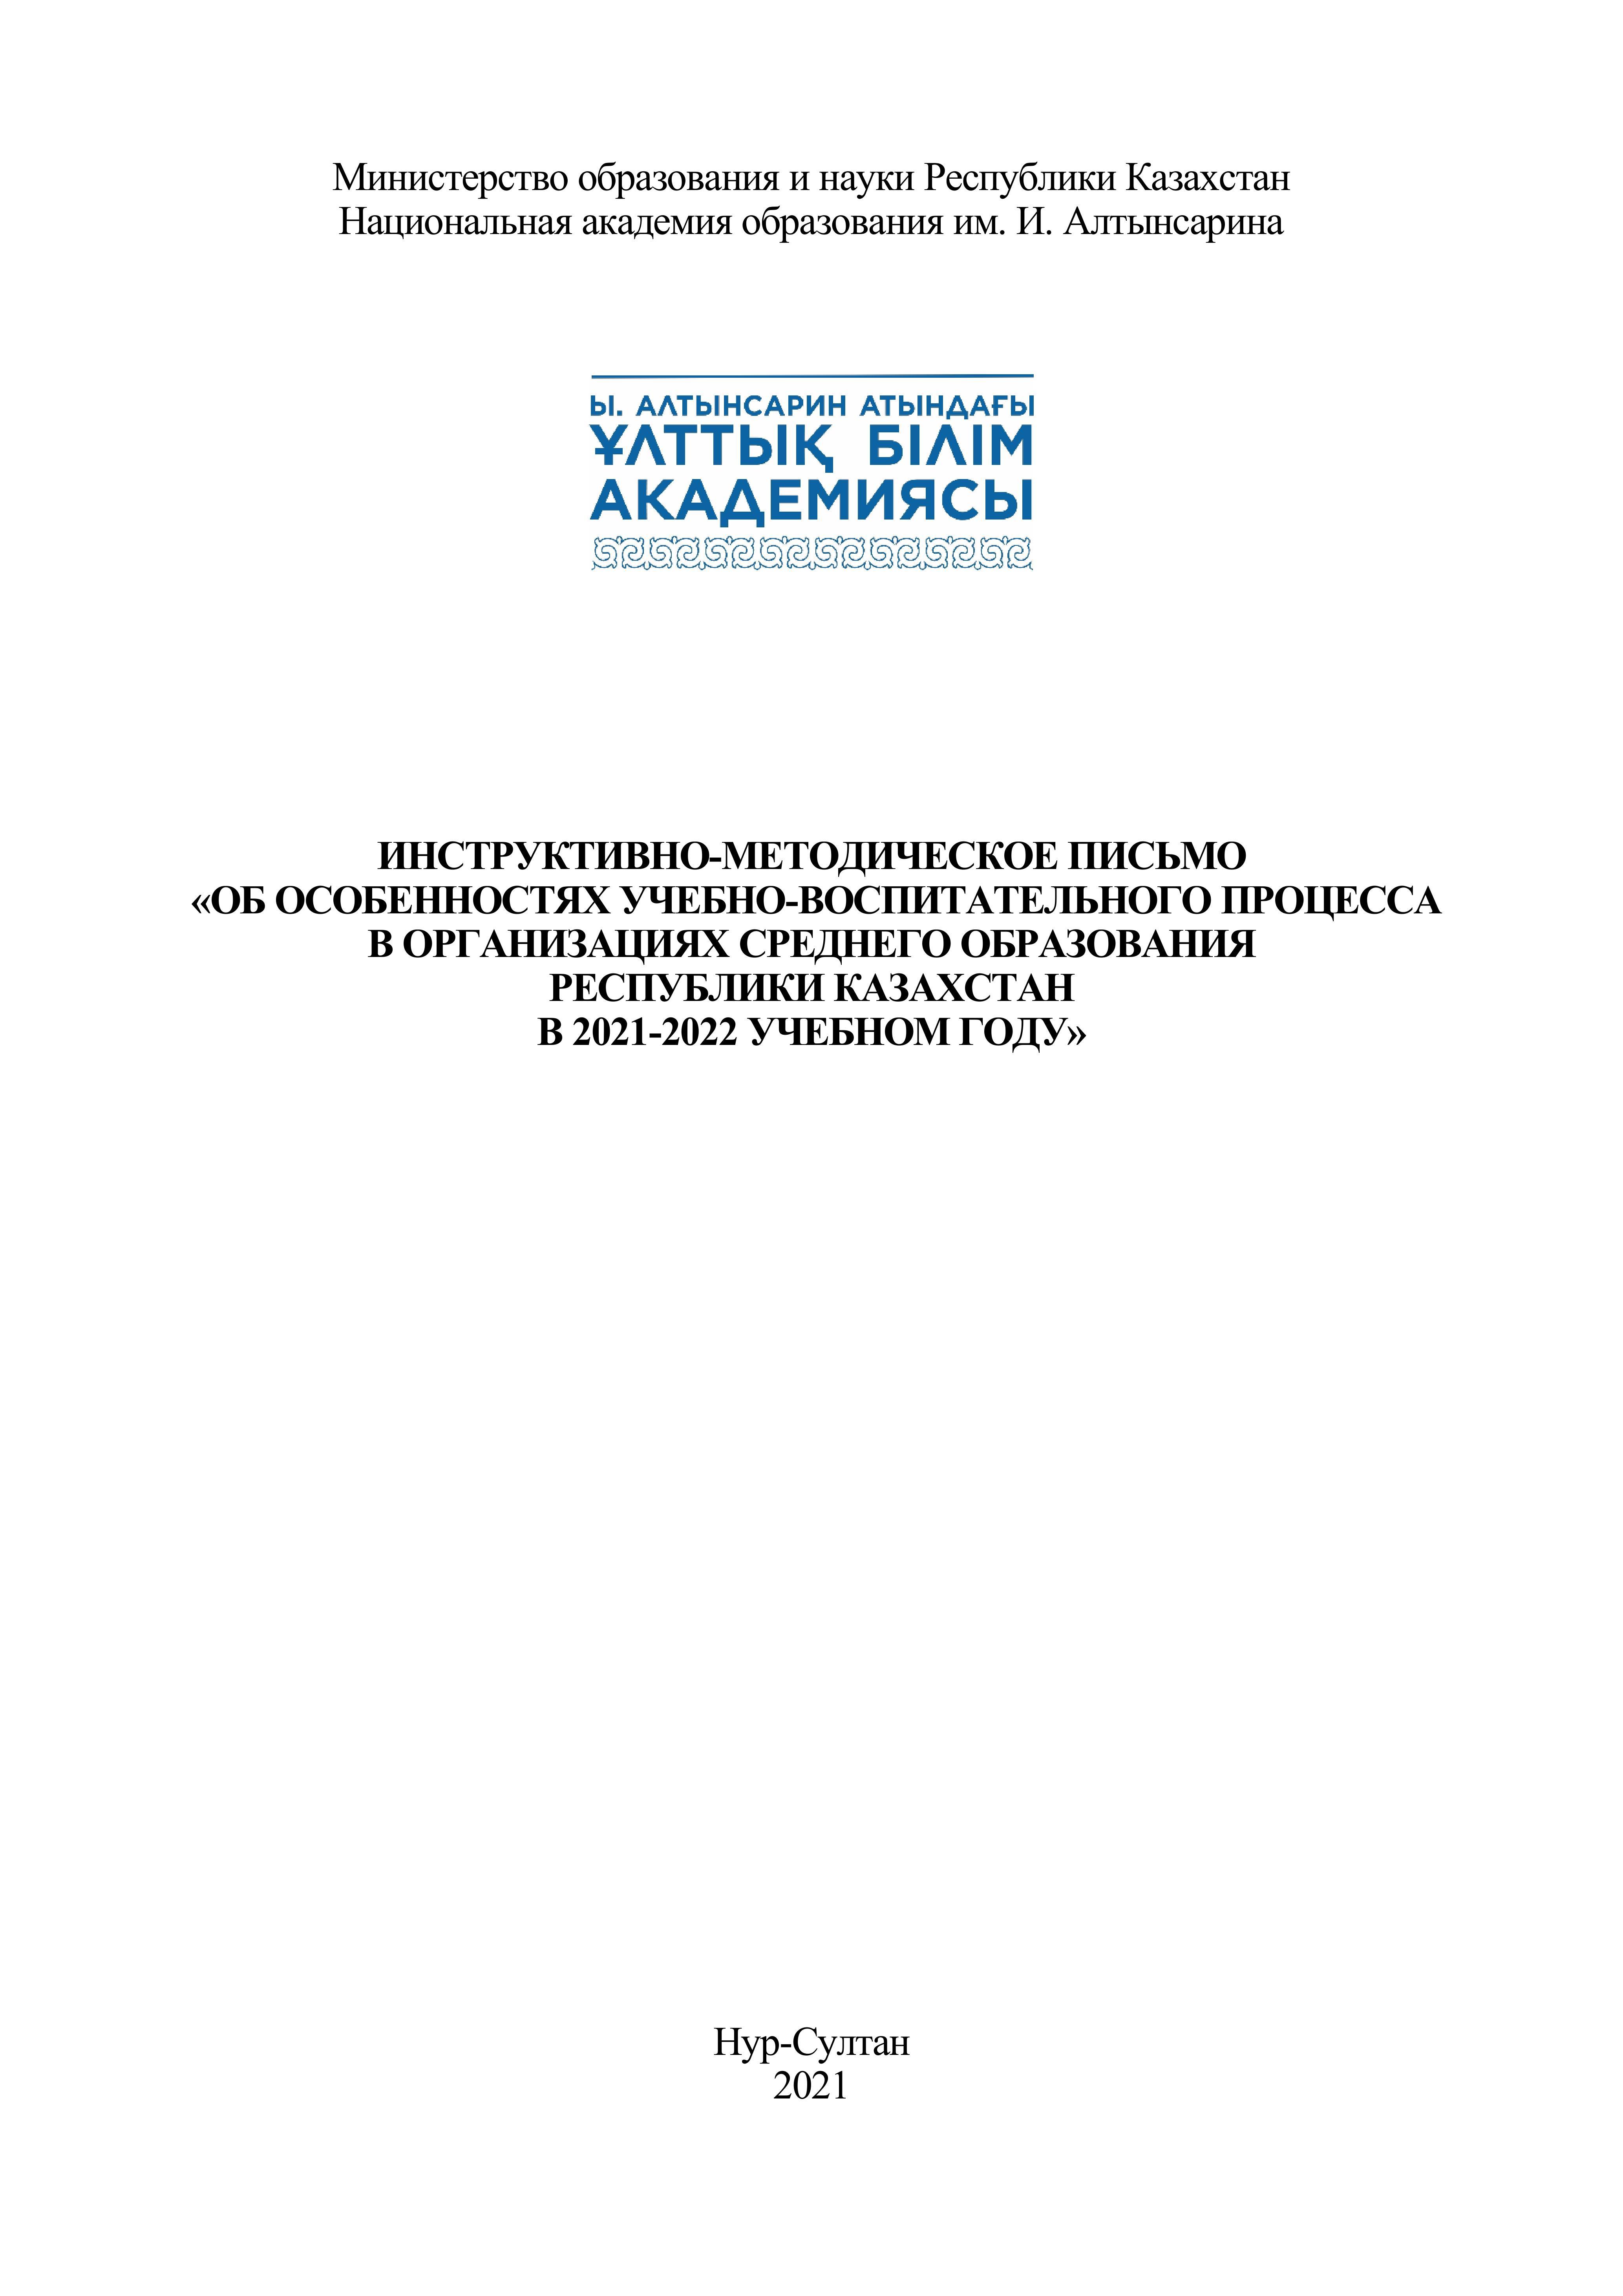 Инструктивно-методическое письмо  «Об особенностях учебно-воспитательного процесса в организациях среднего образования Республики Казахстан в 2021-2022 учебном году»